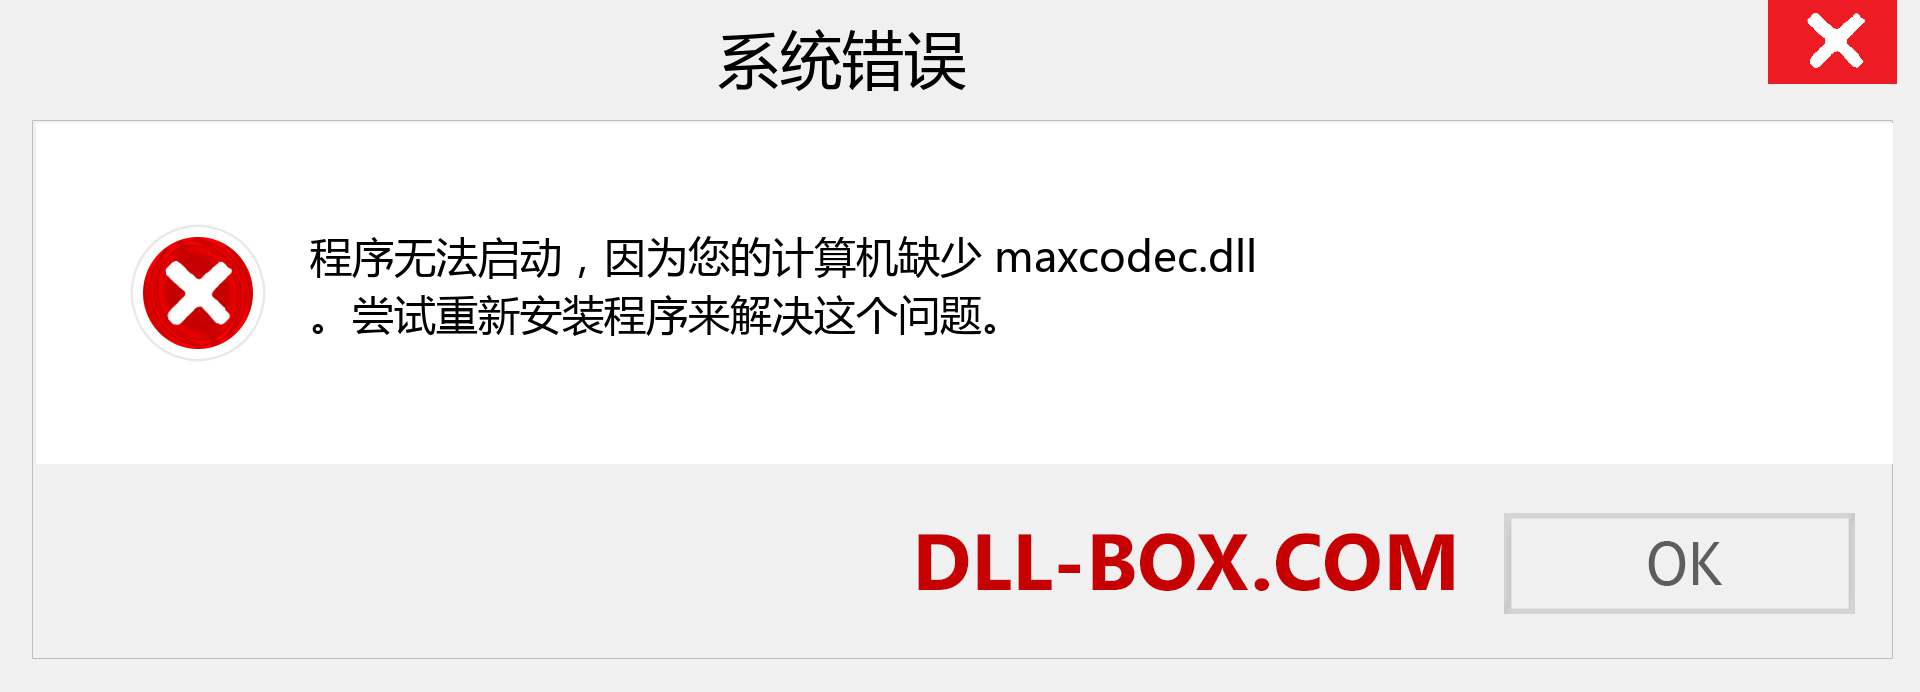 maxcodec.dll 文件丢失？。 适用于 Windows 7、8、10 的下载 - 修复 Windows、照片、图像上的 maxcodec dll 丢失错误